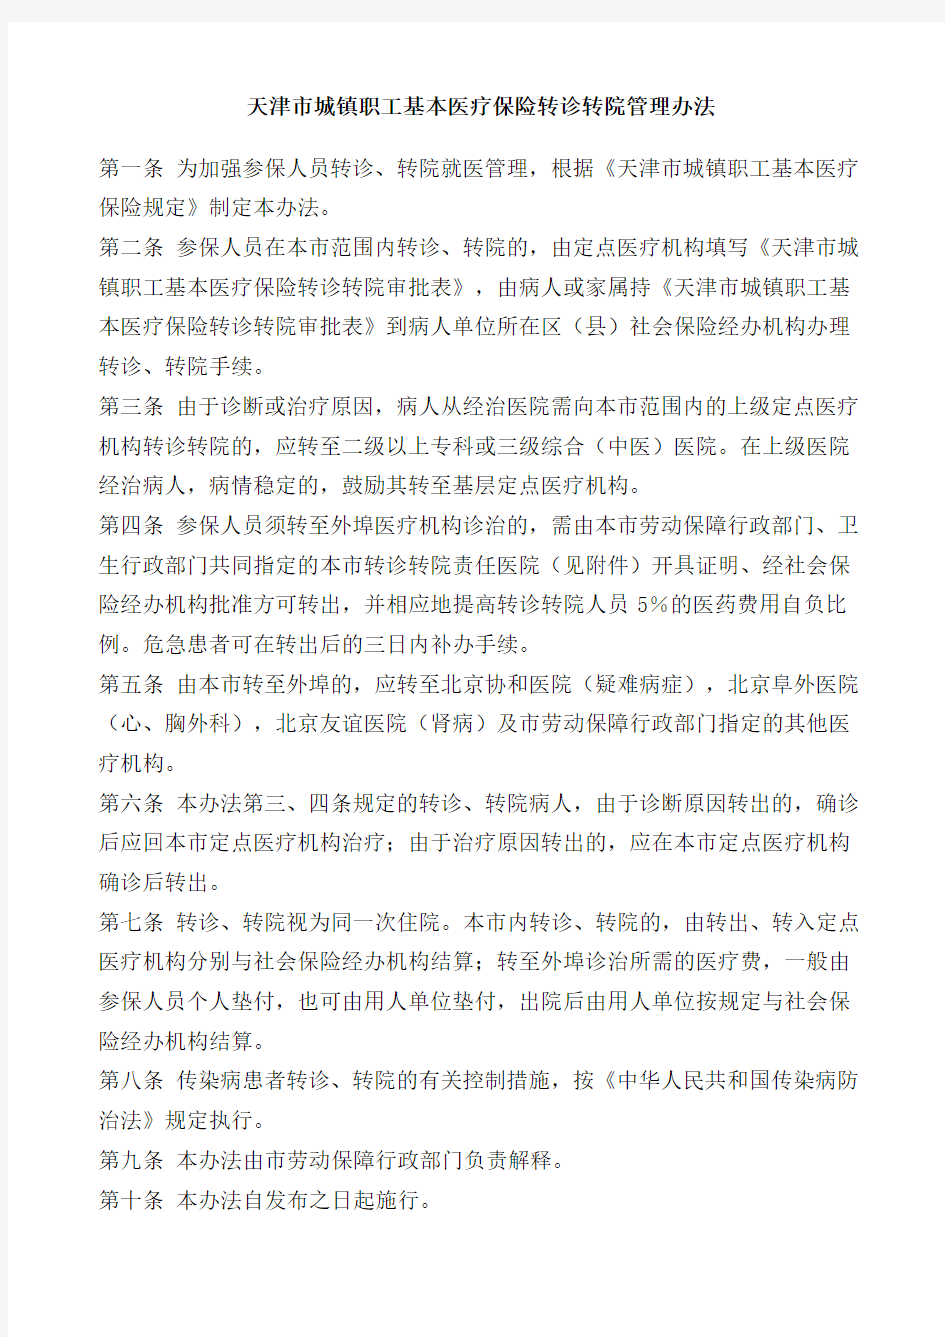 天津市城镇职工基本医疗保险转诊转院管理办法